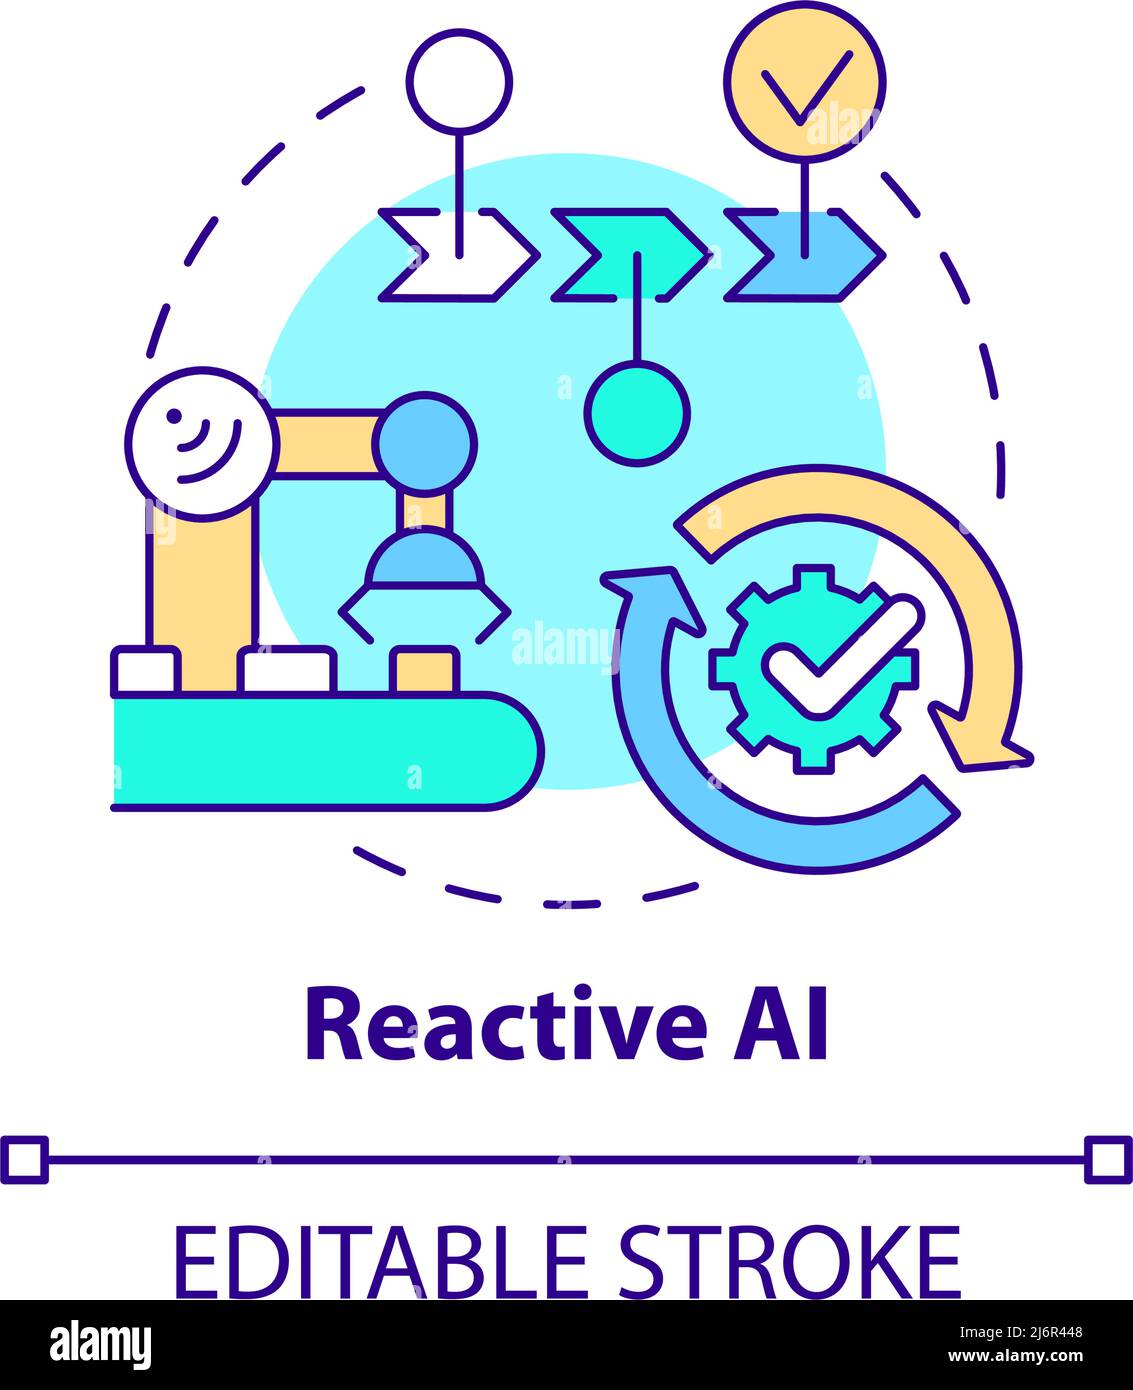 Reactive AI concept icon Stock Vector